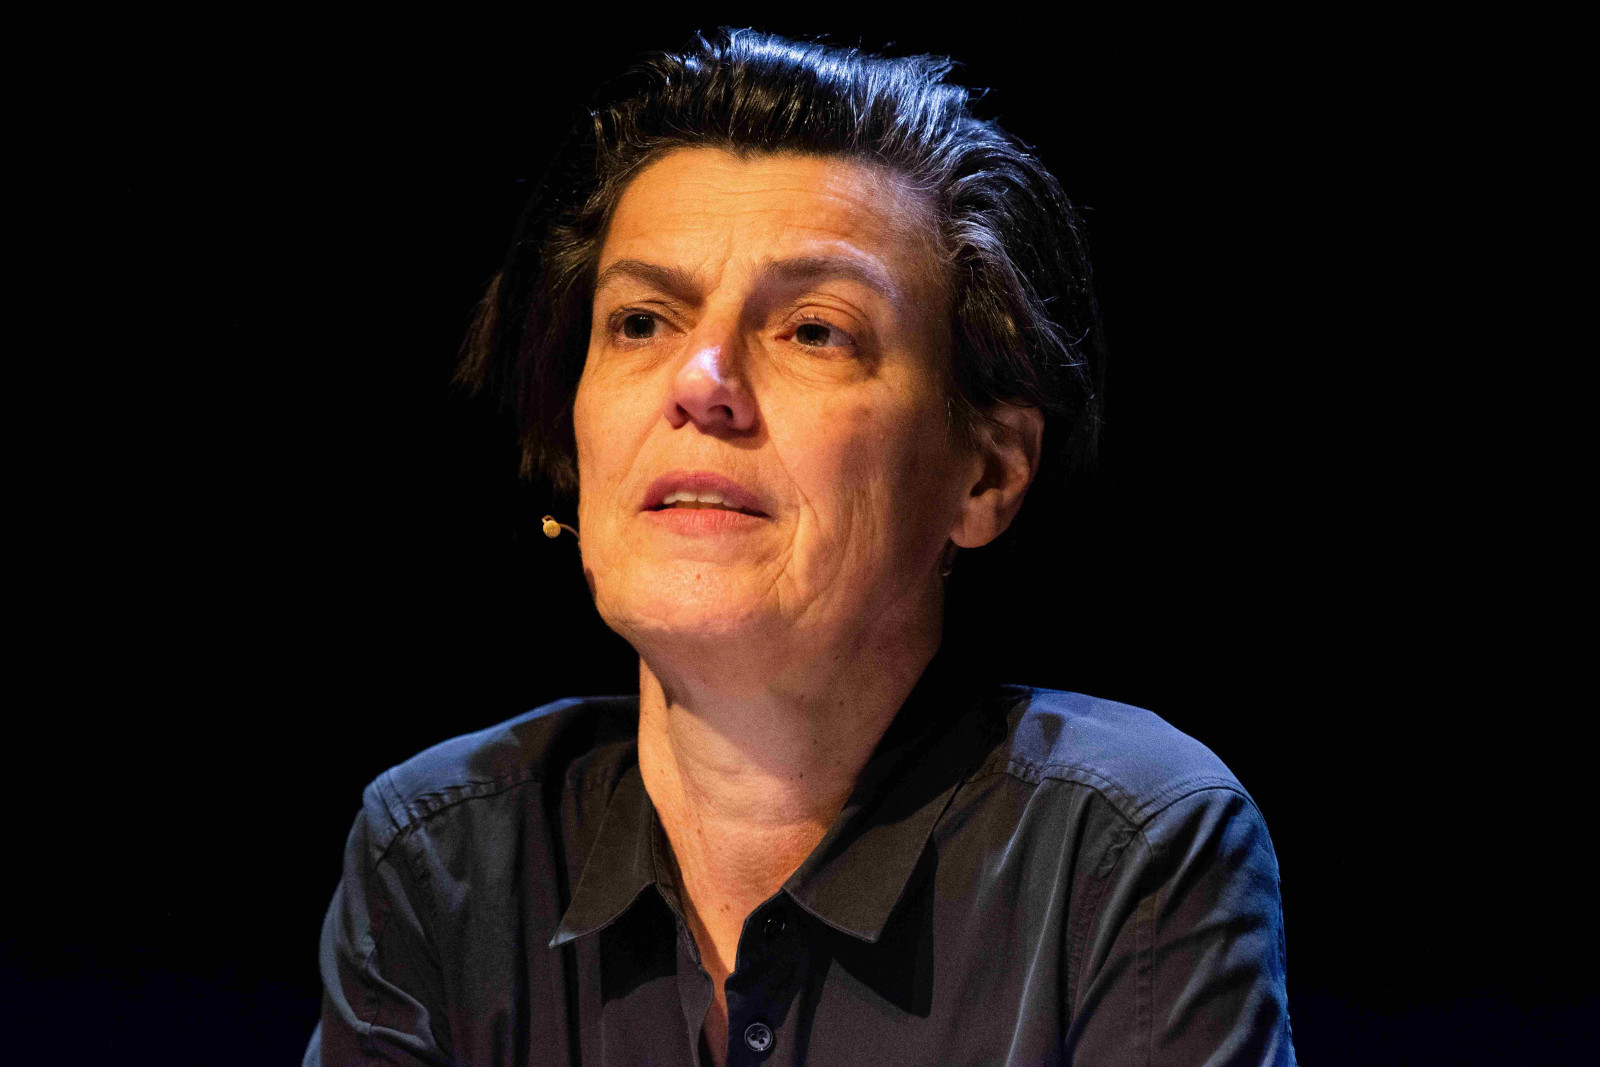 Die Philosophin, Schriftstellerin und Journalistin Carolin Emcke am beim Festival Lit.cologne am 3. März 2023.